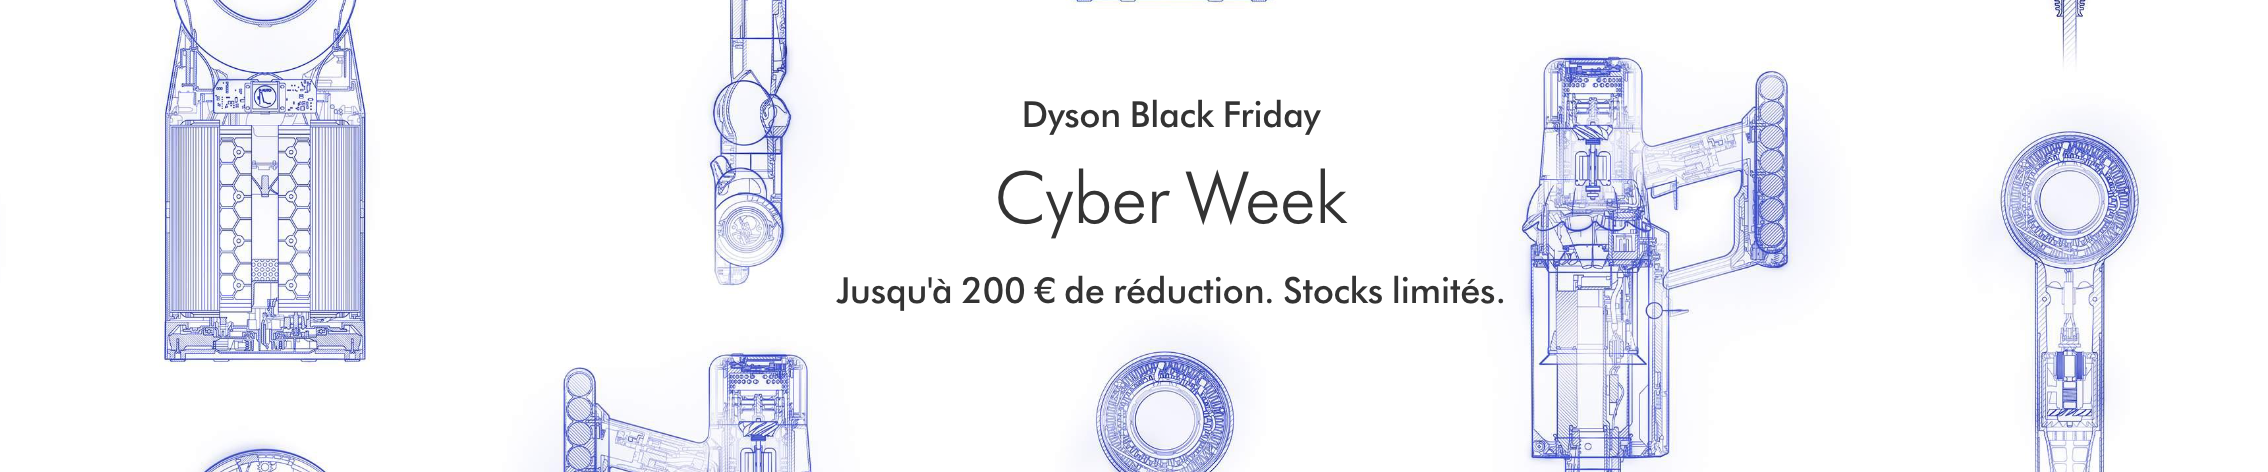 dyson cyber week